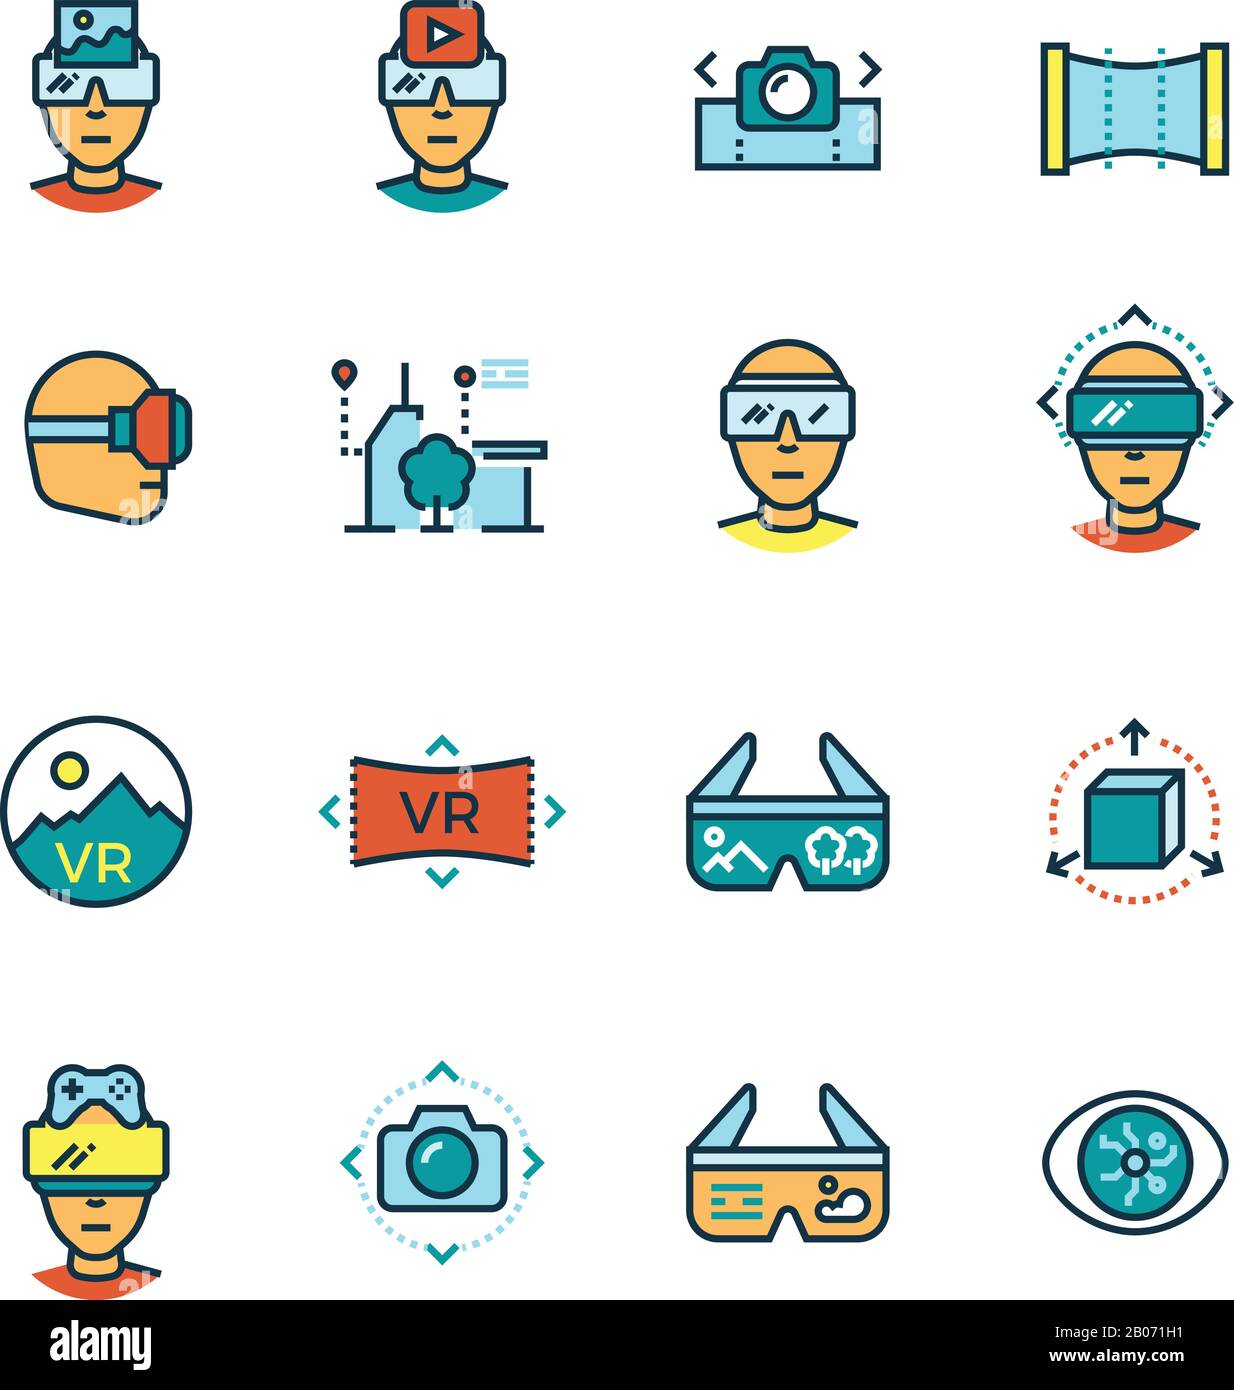 Virtuelle Realität, virtueller Computer, Innovationen in der visuellen Kommunikation zukunftsweisende Technologien Thin Line Icons mit flachen Farbelementen. Vektorgrafiken Stock Vektor